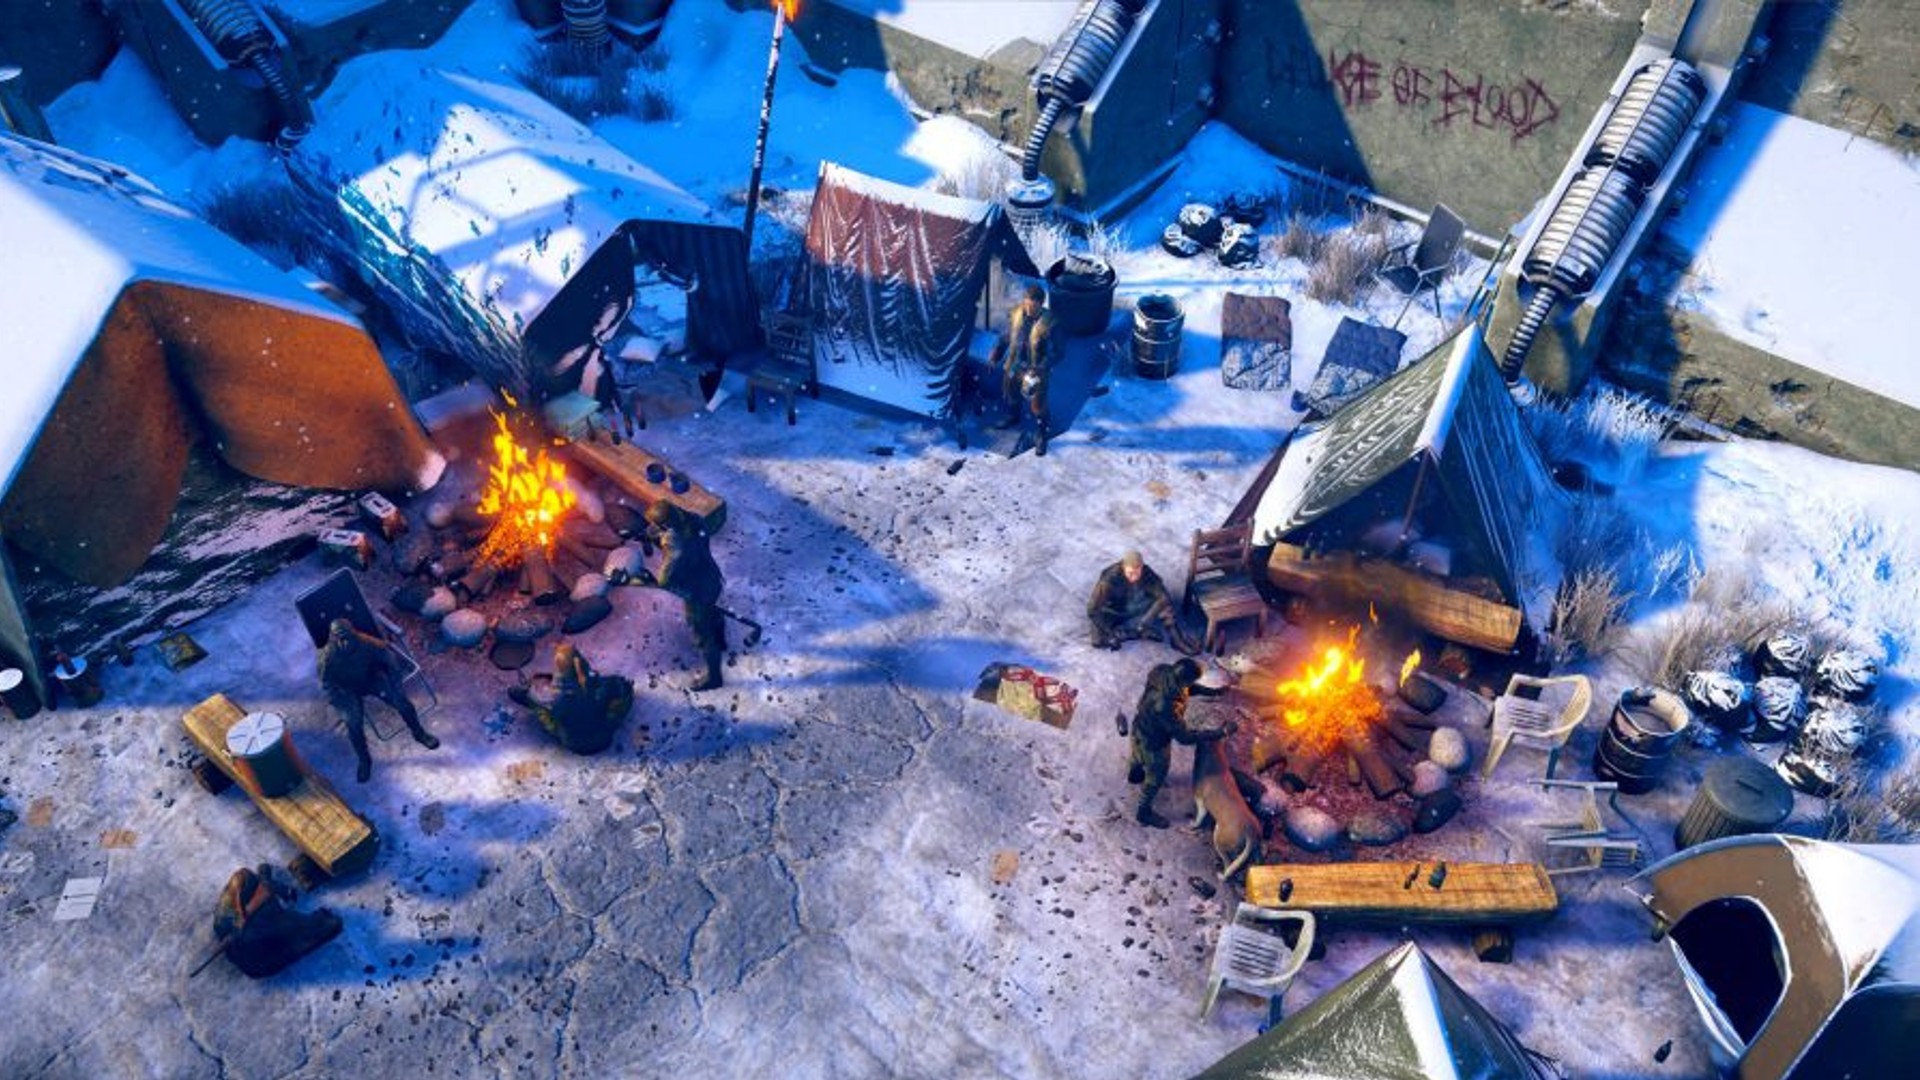 أفضل ألعاب RPG: Wasteland 3. تظهر الصورة معسكرًا في مكان ثلجي